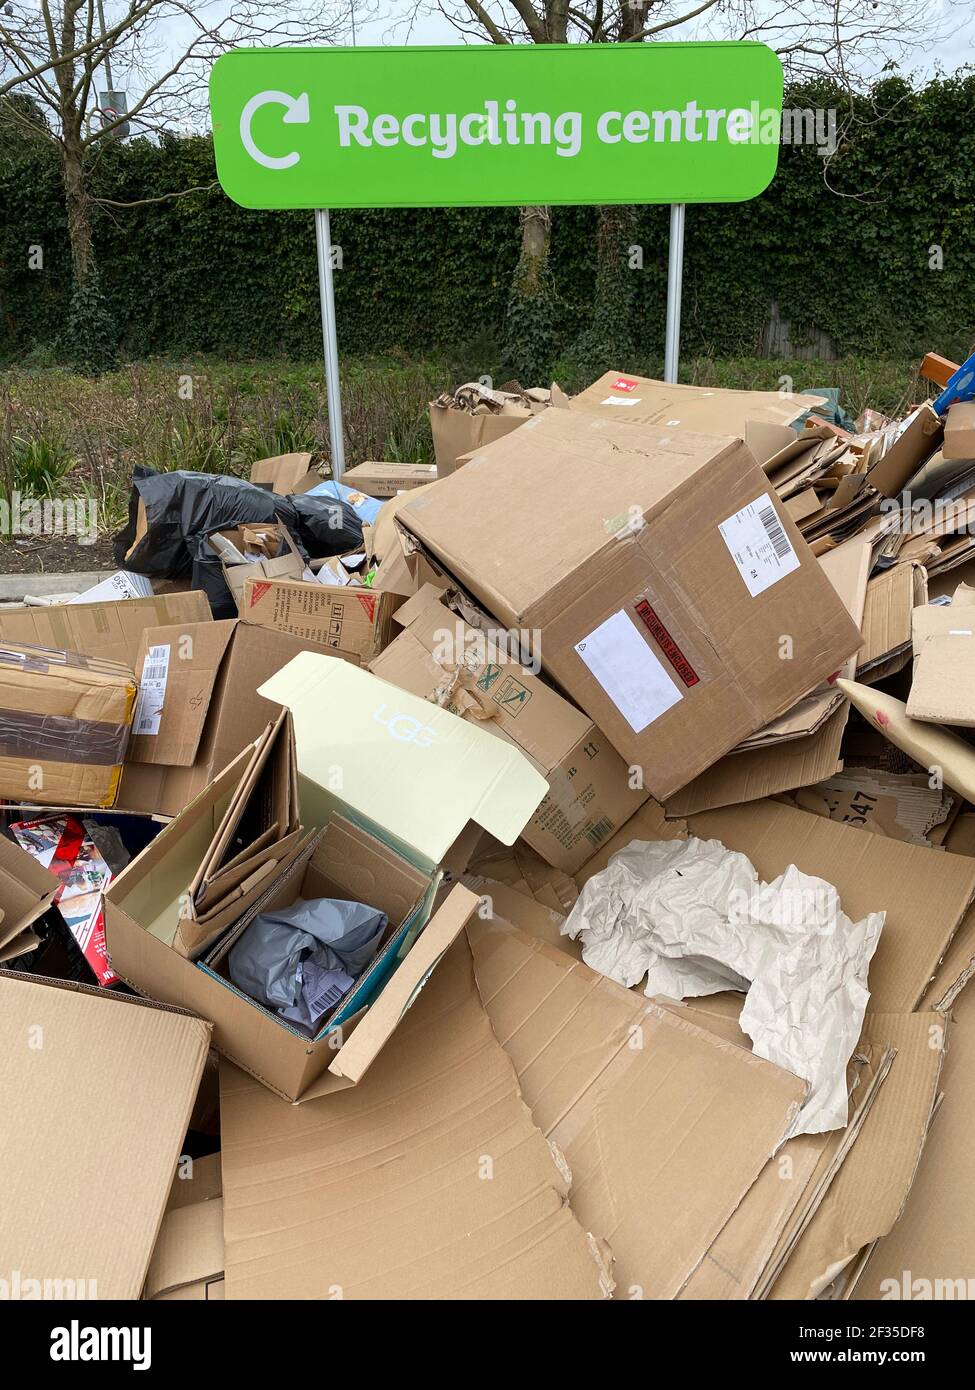 Boîtes en carton en face d'un panneau de centre de recyclage dans un parking de supermarché dans le sud-ouest de Londres. Date de la photo: Dimanche 14 mars 2021. Banque D'Images